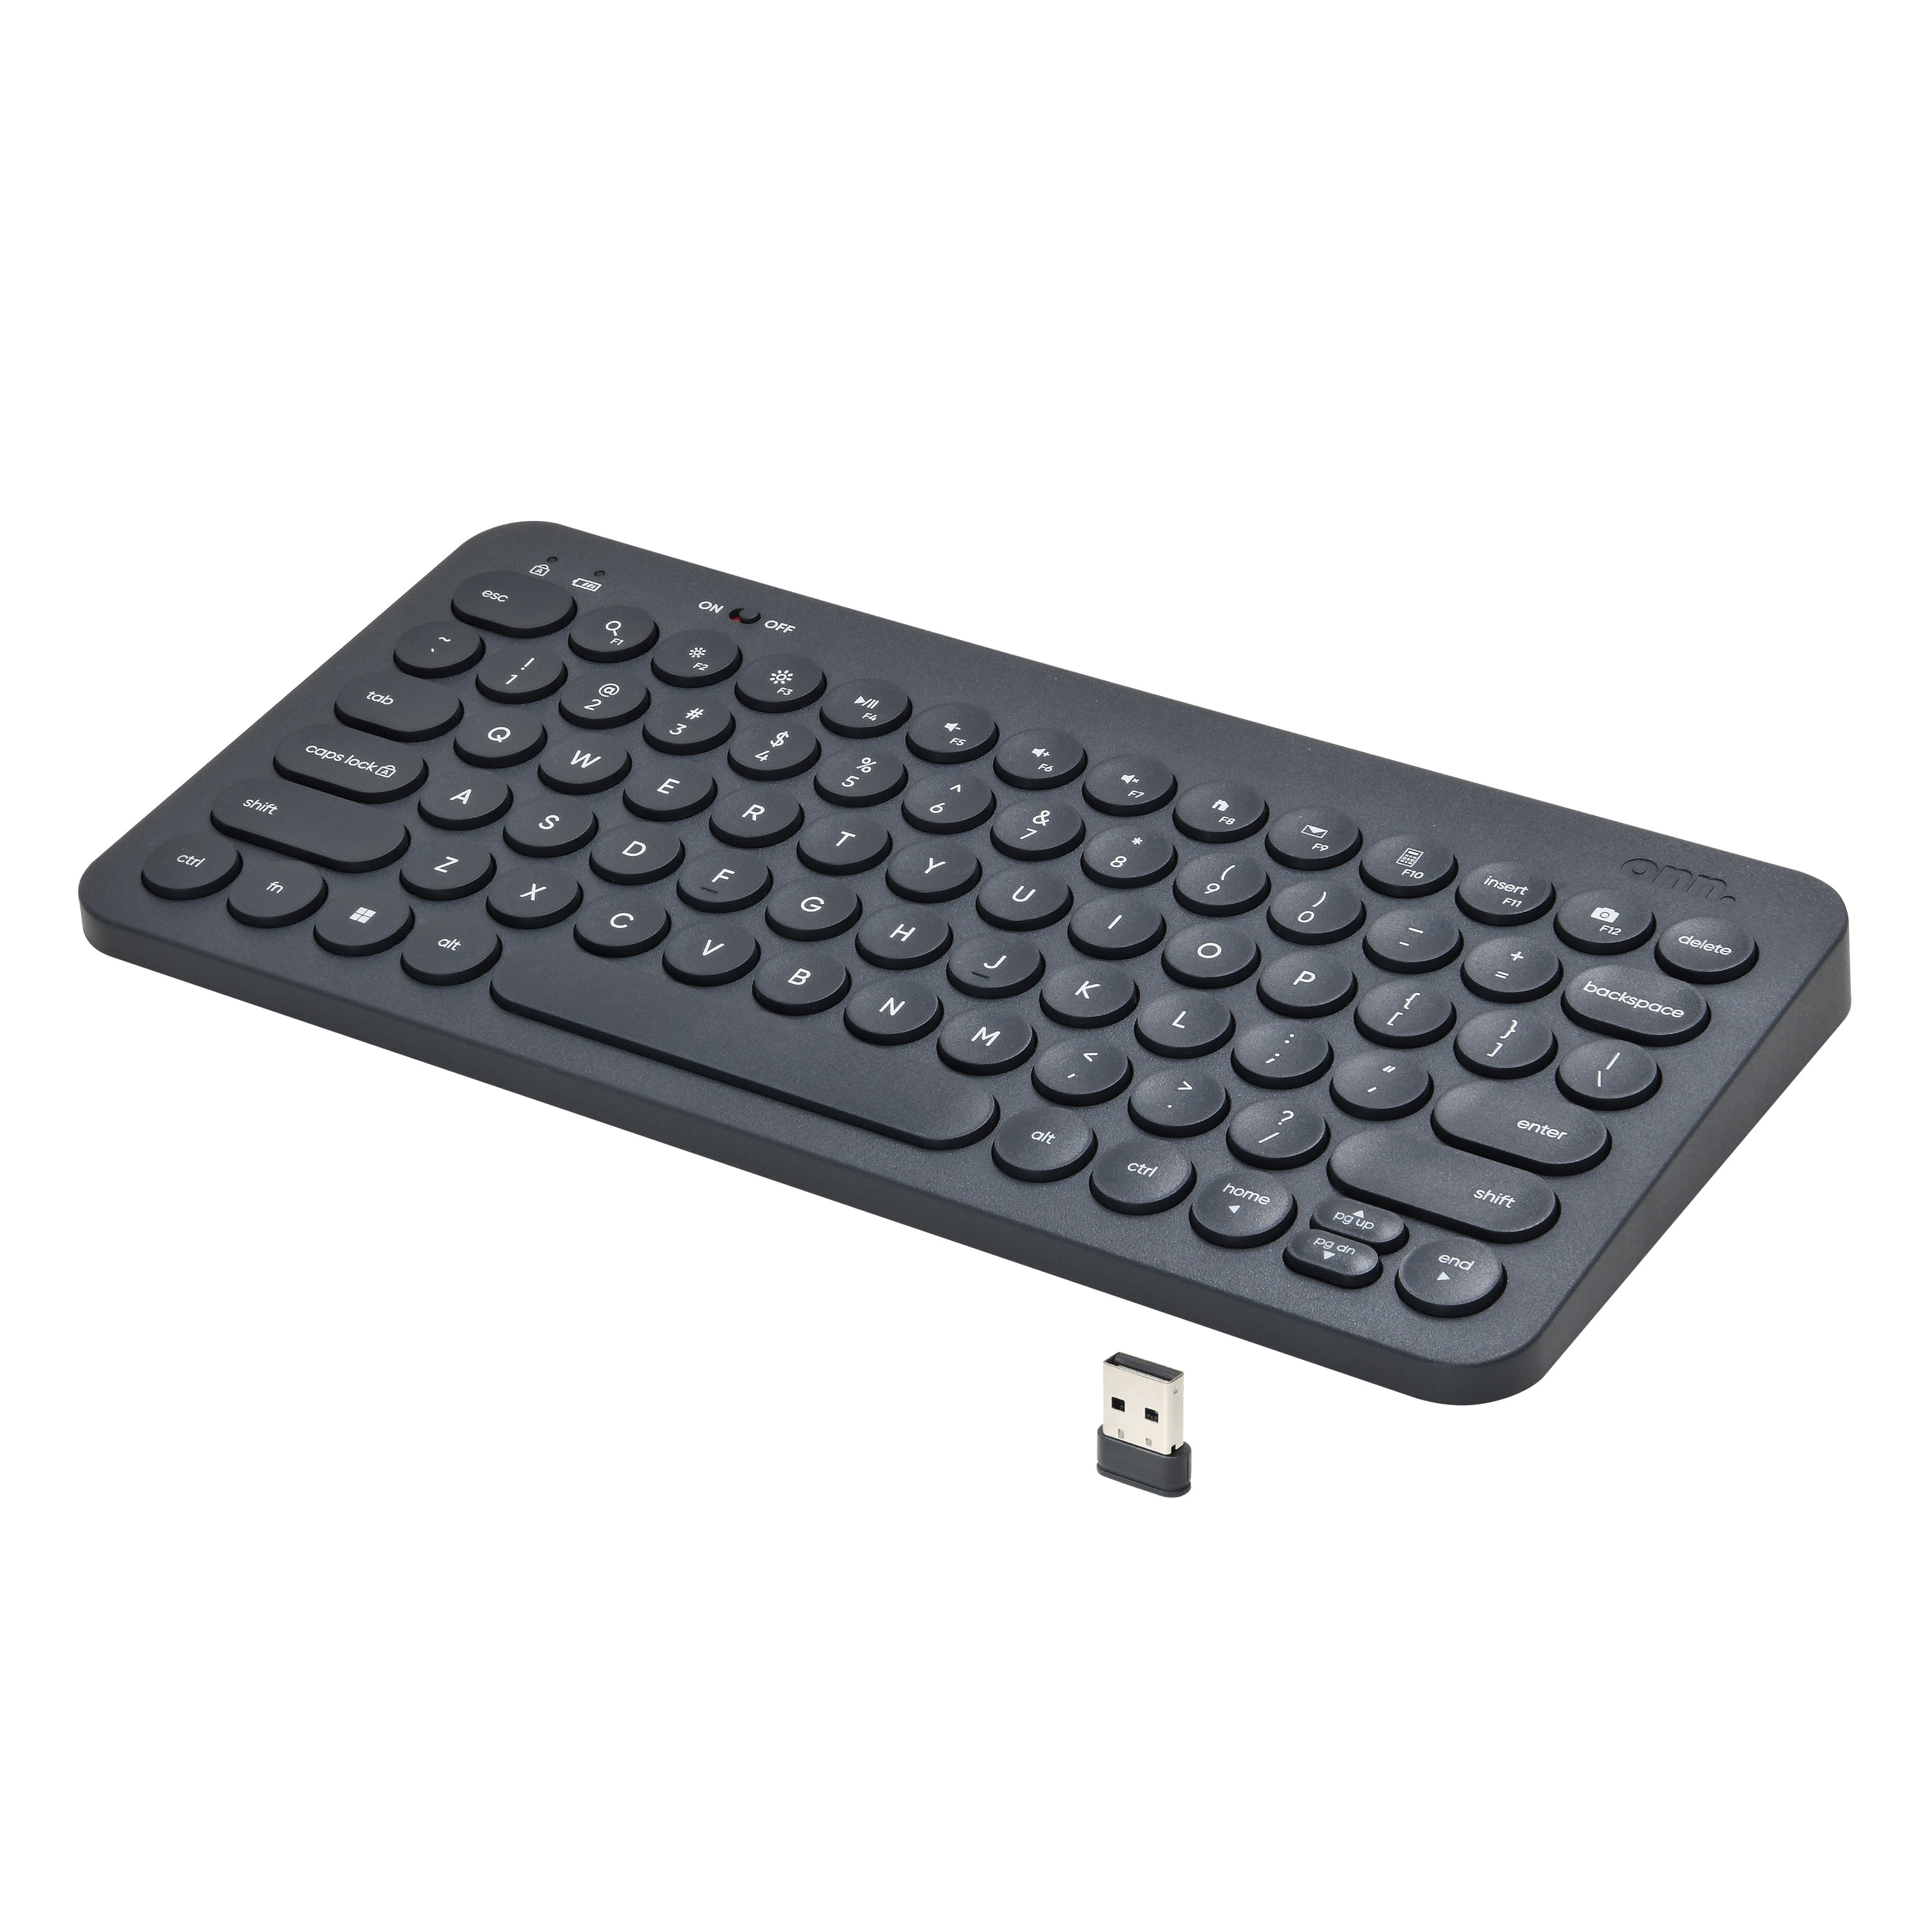 onn. Mini Compact Wireless Office Keyboard,USB Receiver, 78 Keys, Gray 